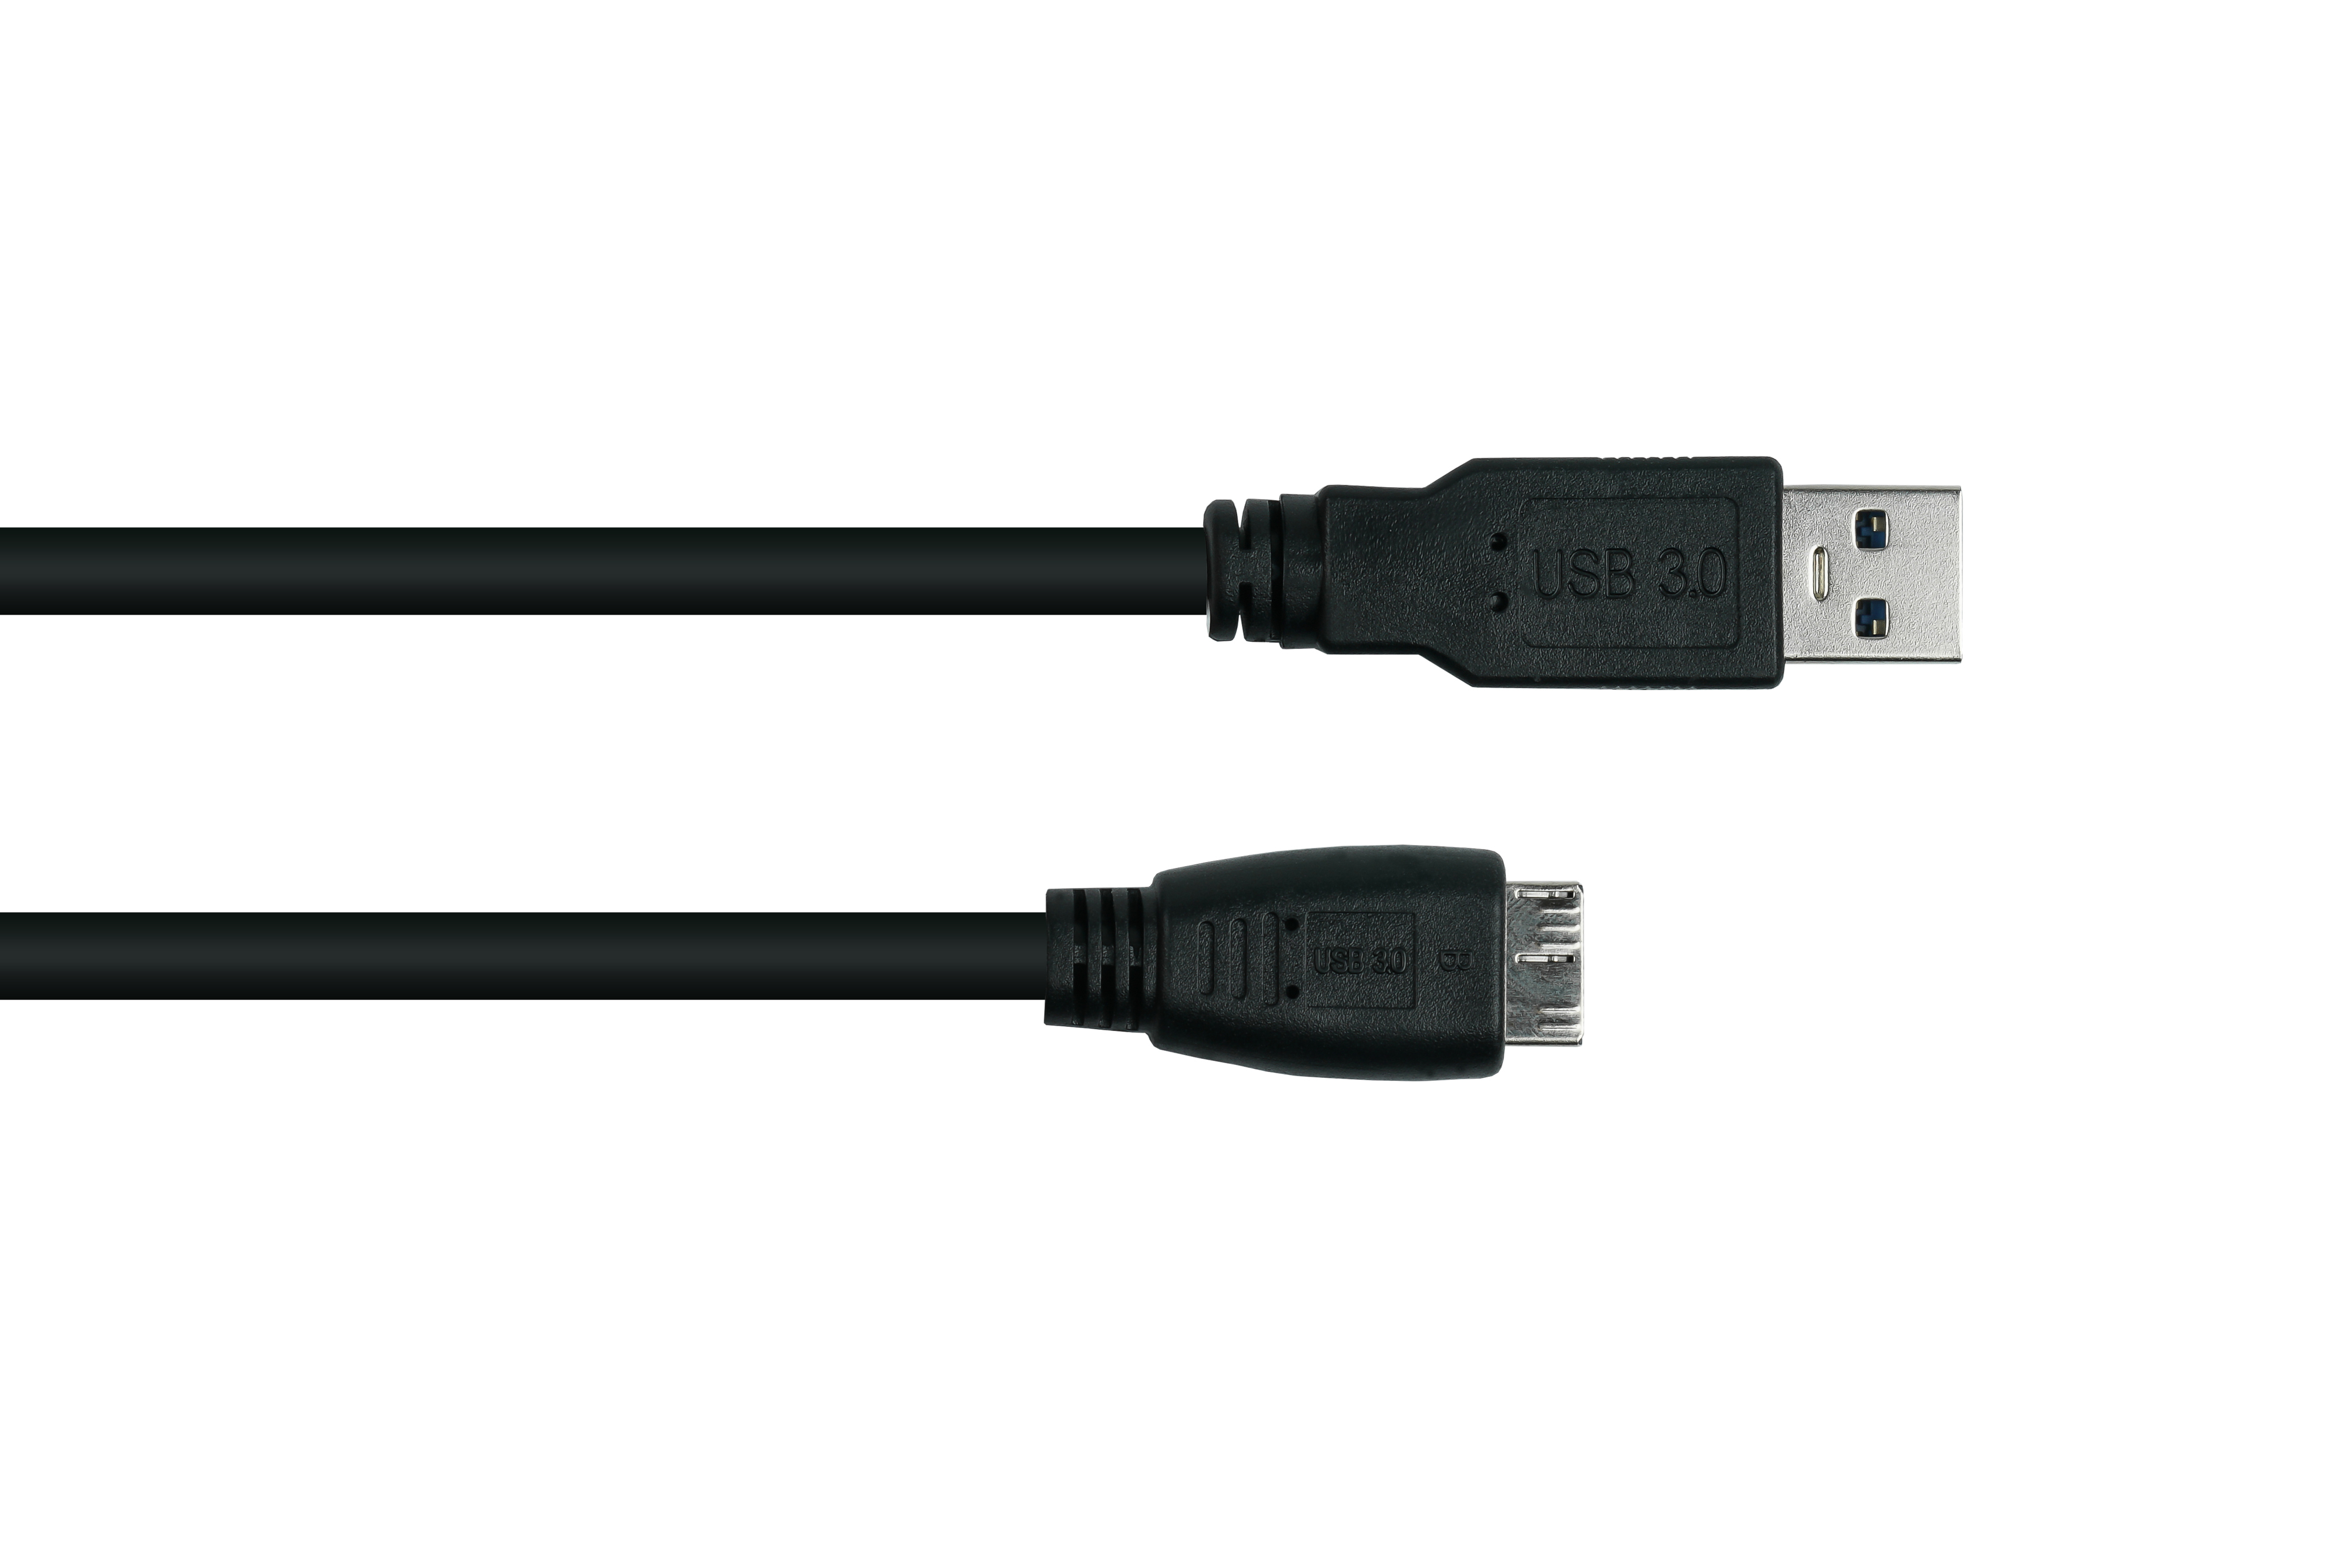 KABELMEISTER Stecker A an USB Kabel Micro / Stecker KUPFER, UL, B,Premium, AWG28 3.0 schwarz AWG24